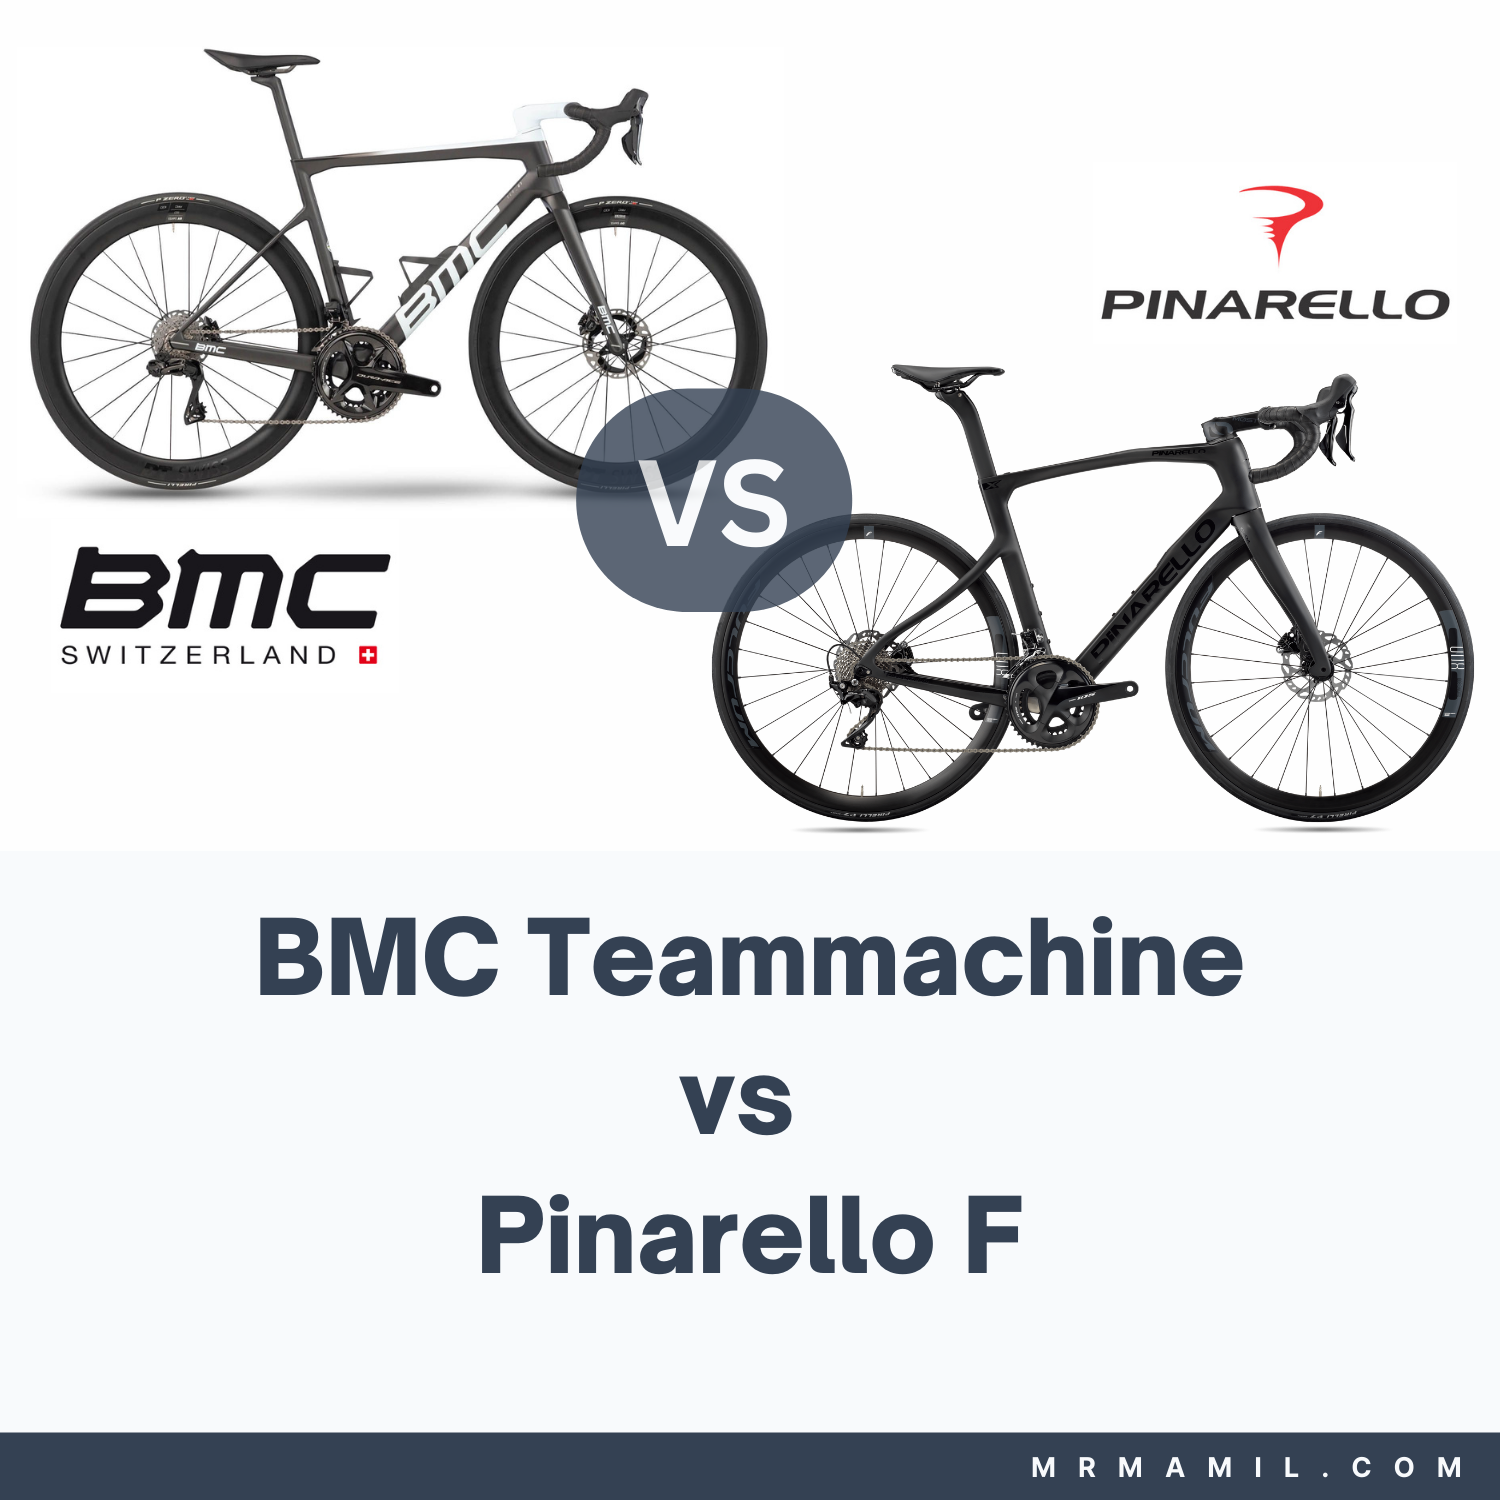 BMC Teammachine vs Pinarello F